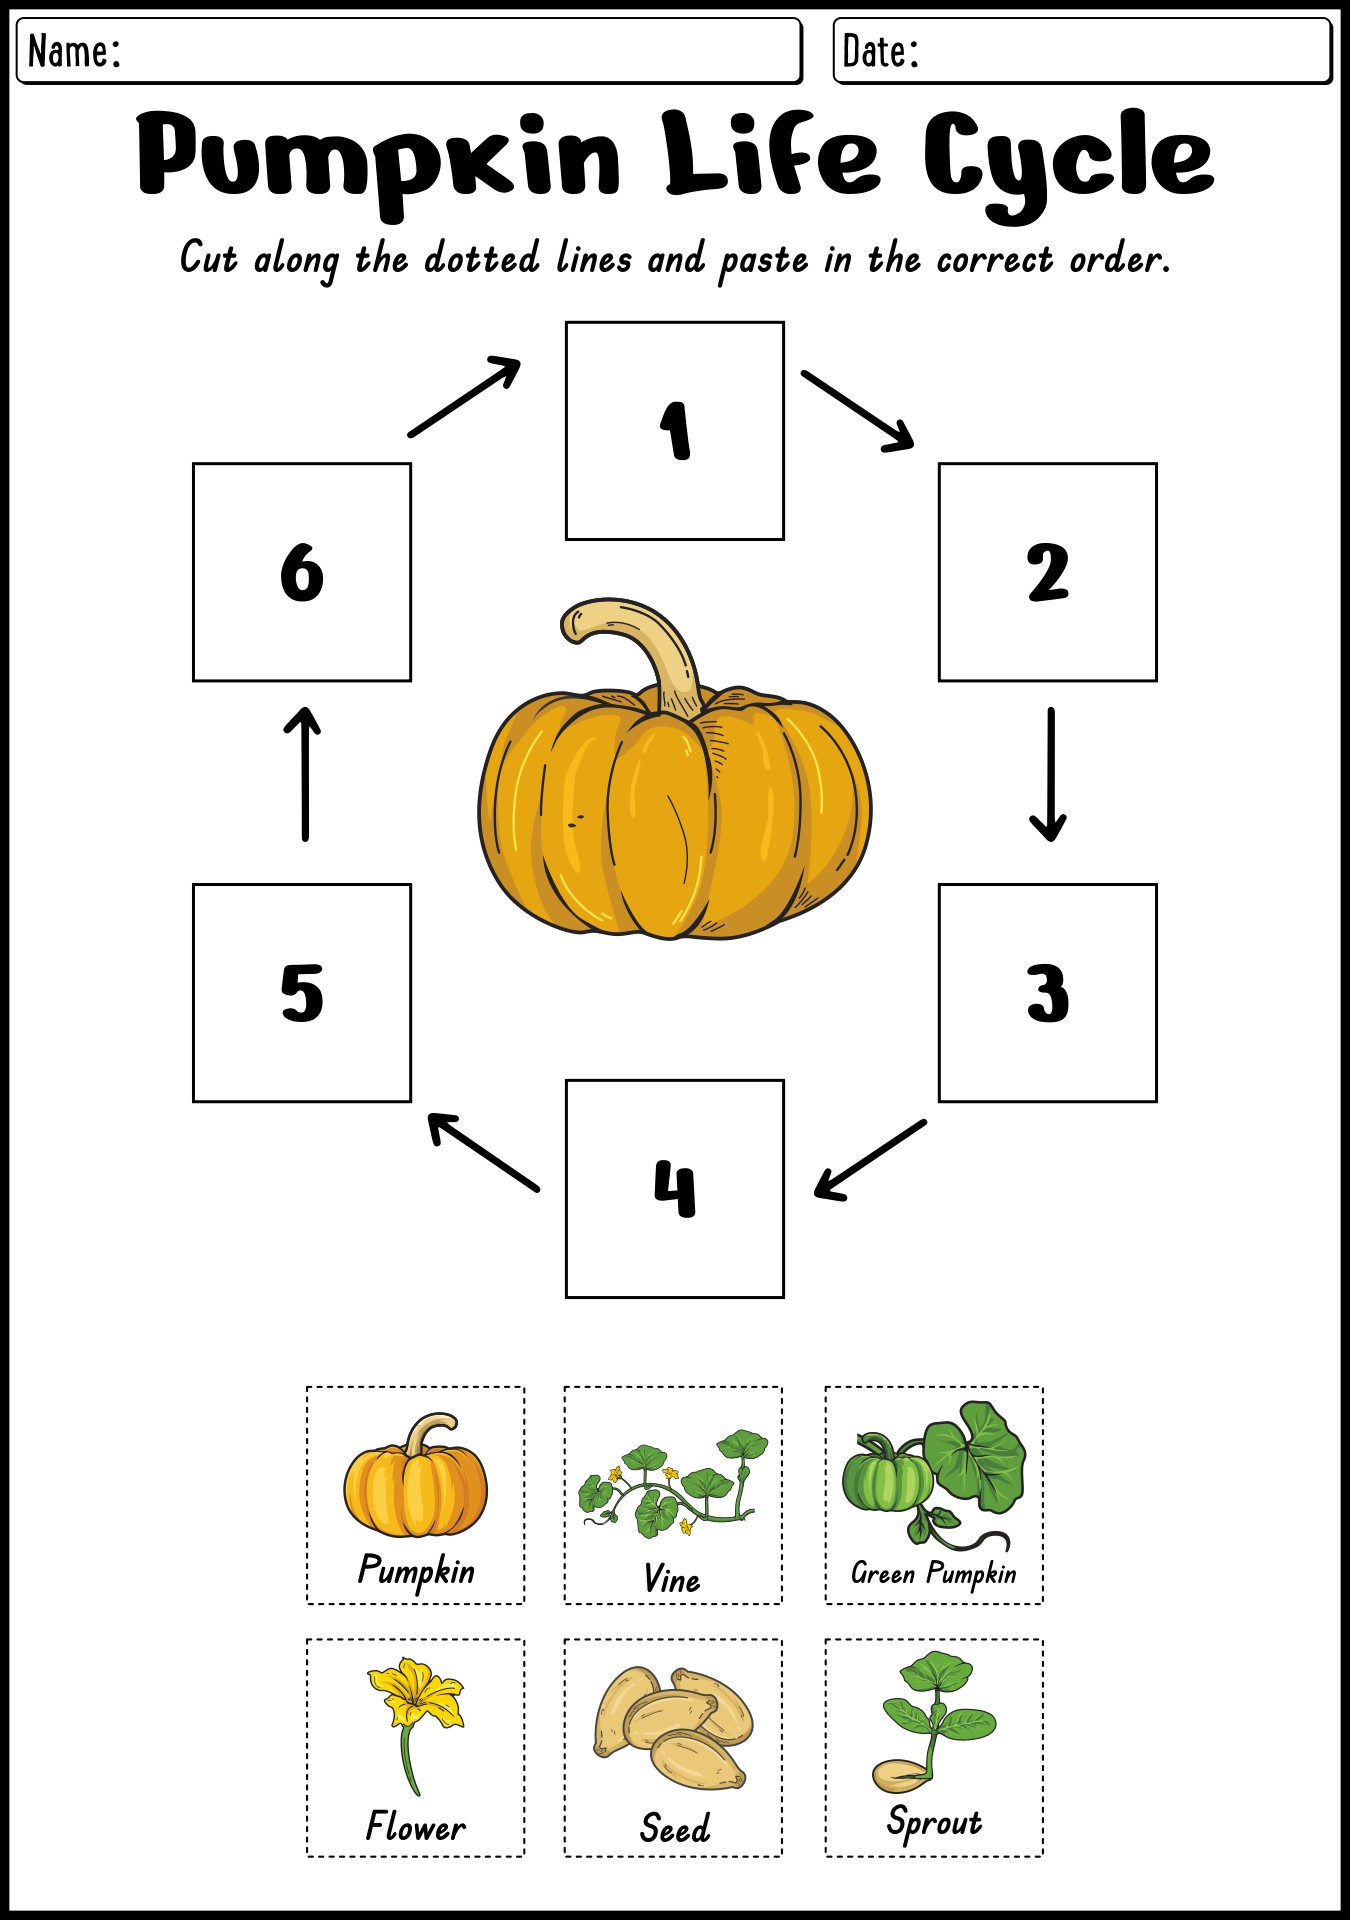 Pumpkin Life Cycle Worksheets